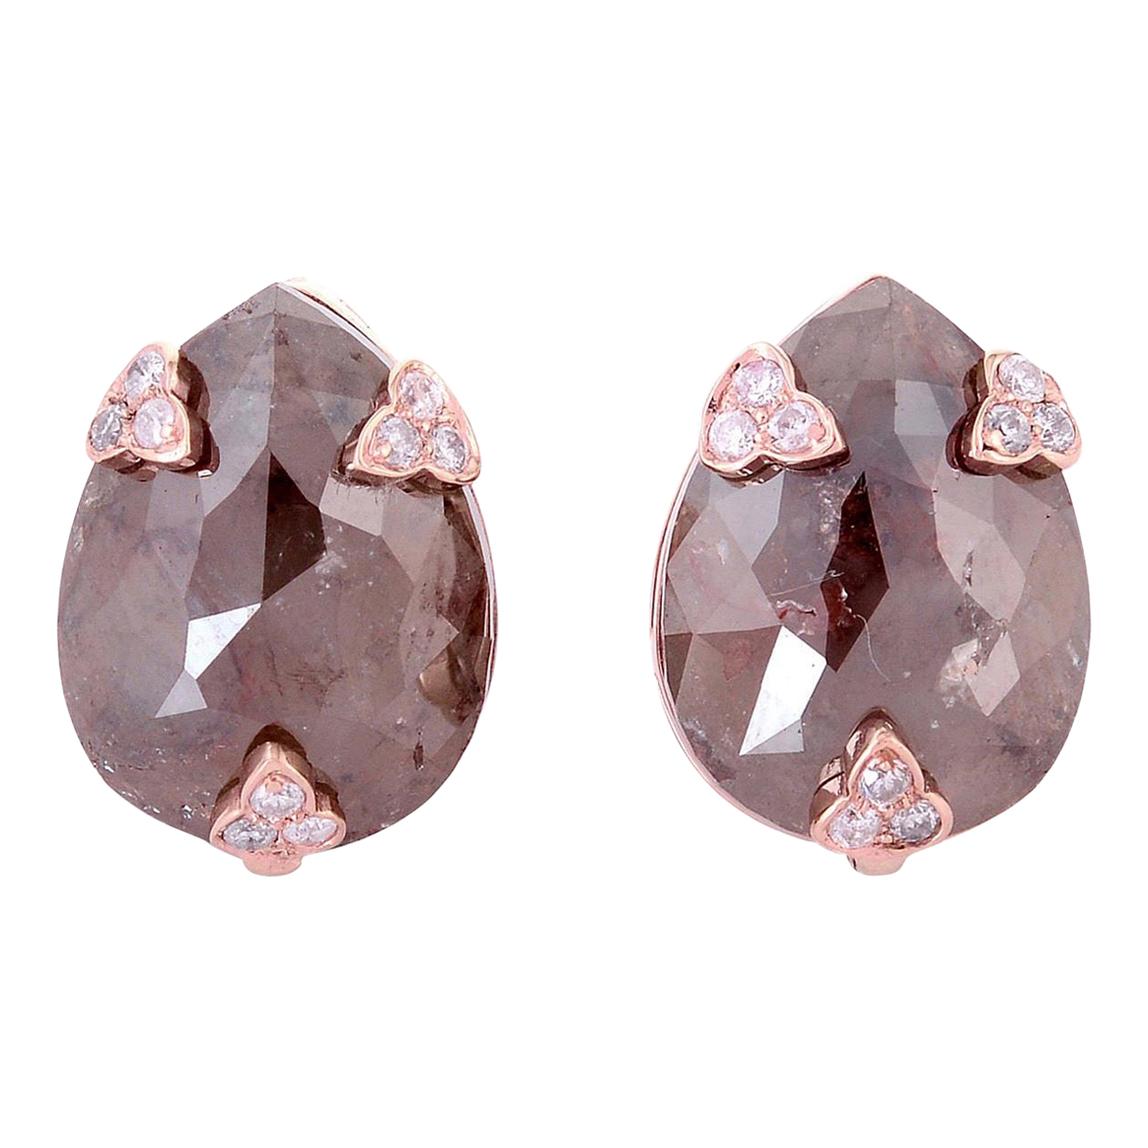 Fancy Diamond 18 Karat Gold Stud Earrings For Sale